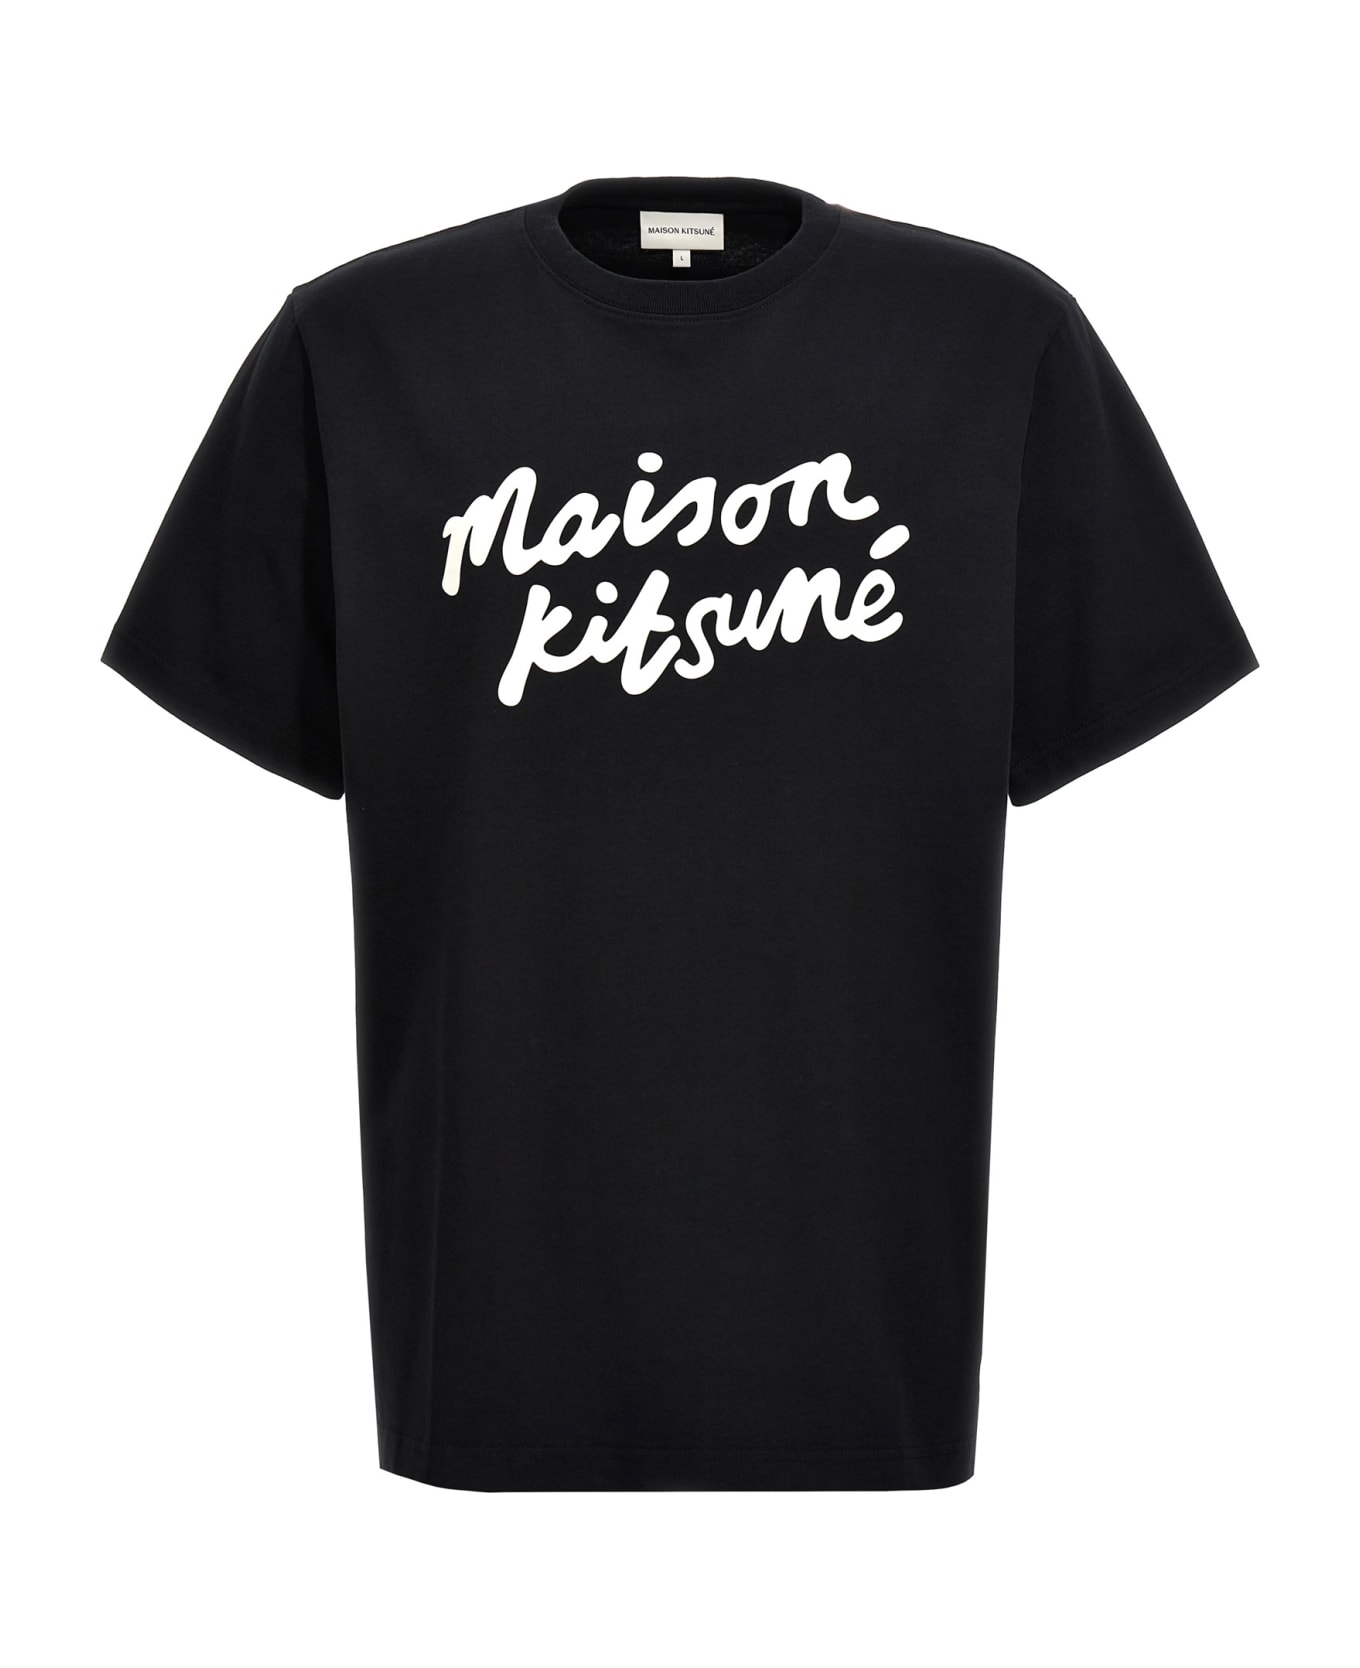 Maison Kitsuné 'maison Kitsuné Handwriting' T-shirt - White/Black シャツ